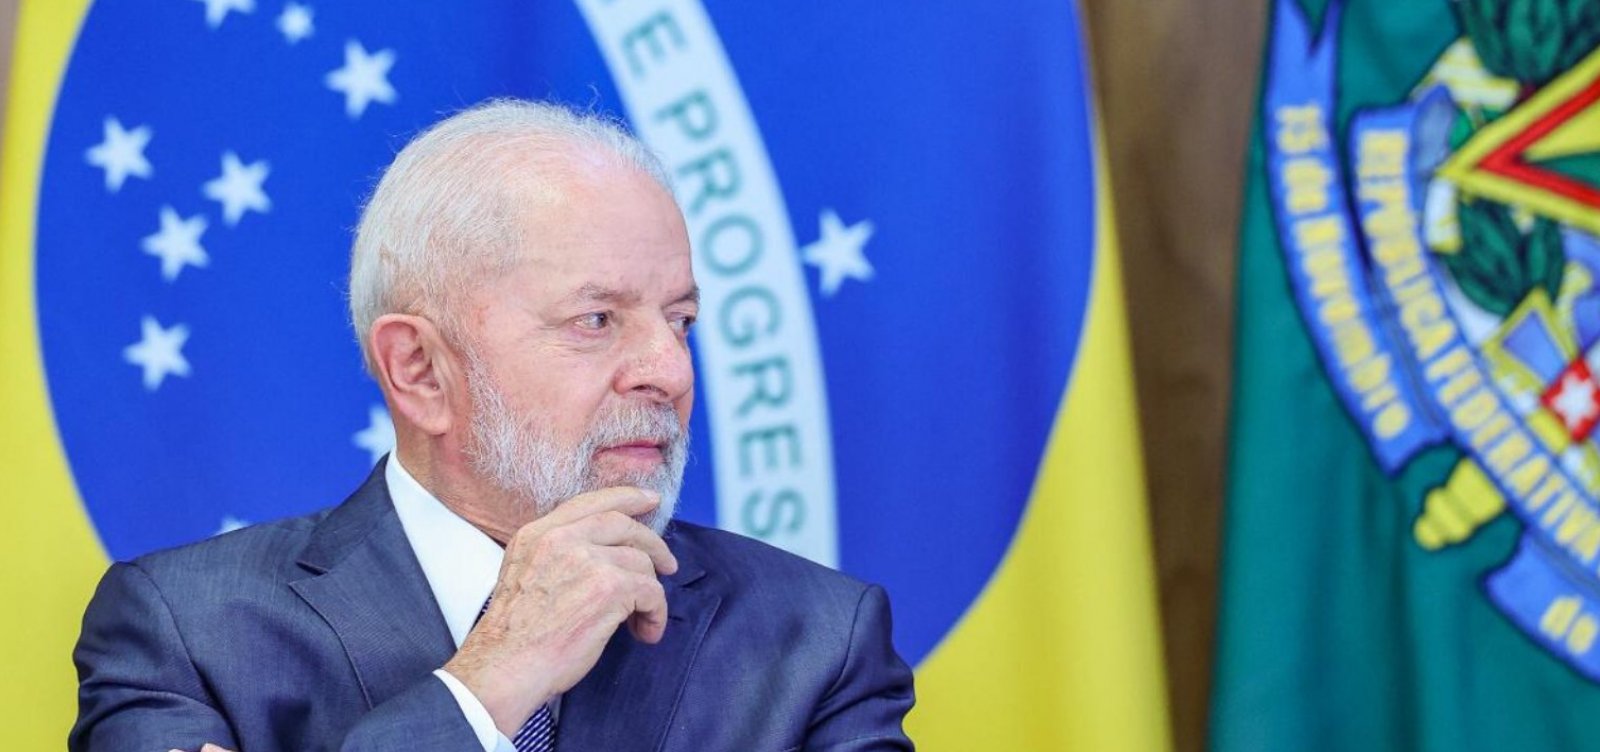 Reforçando crítica do Itamaraty, Lula diz que veto a candidata venezuelana é grave